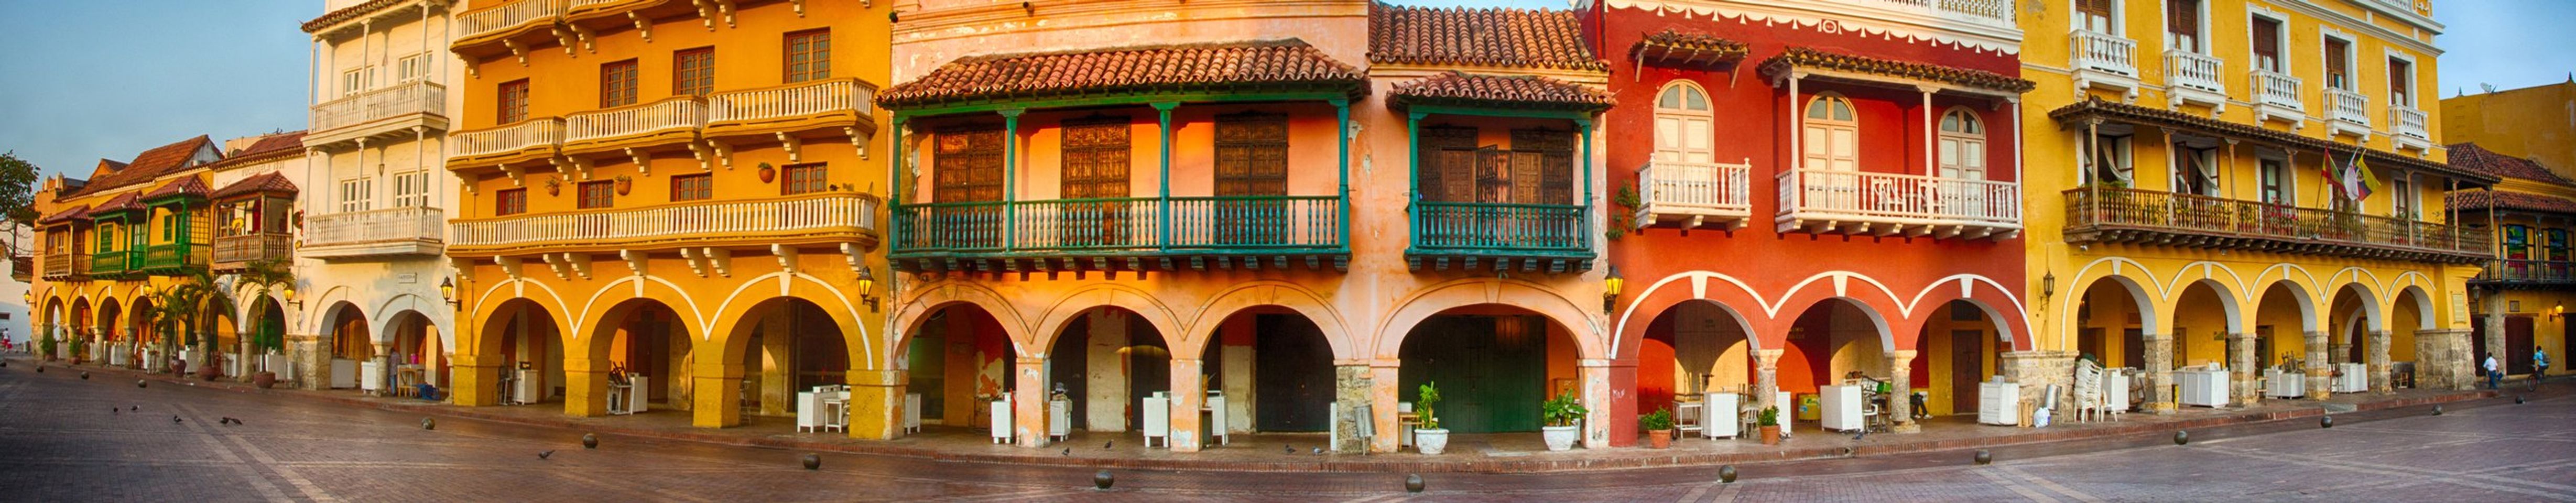 Échappez-vous au paradis : les îles de Rosario, le joyau caché de Cartagena.